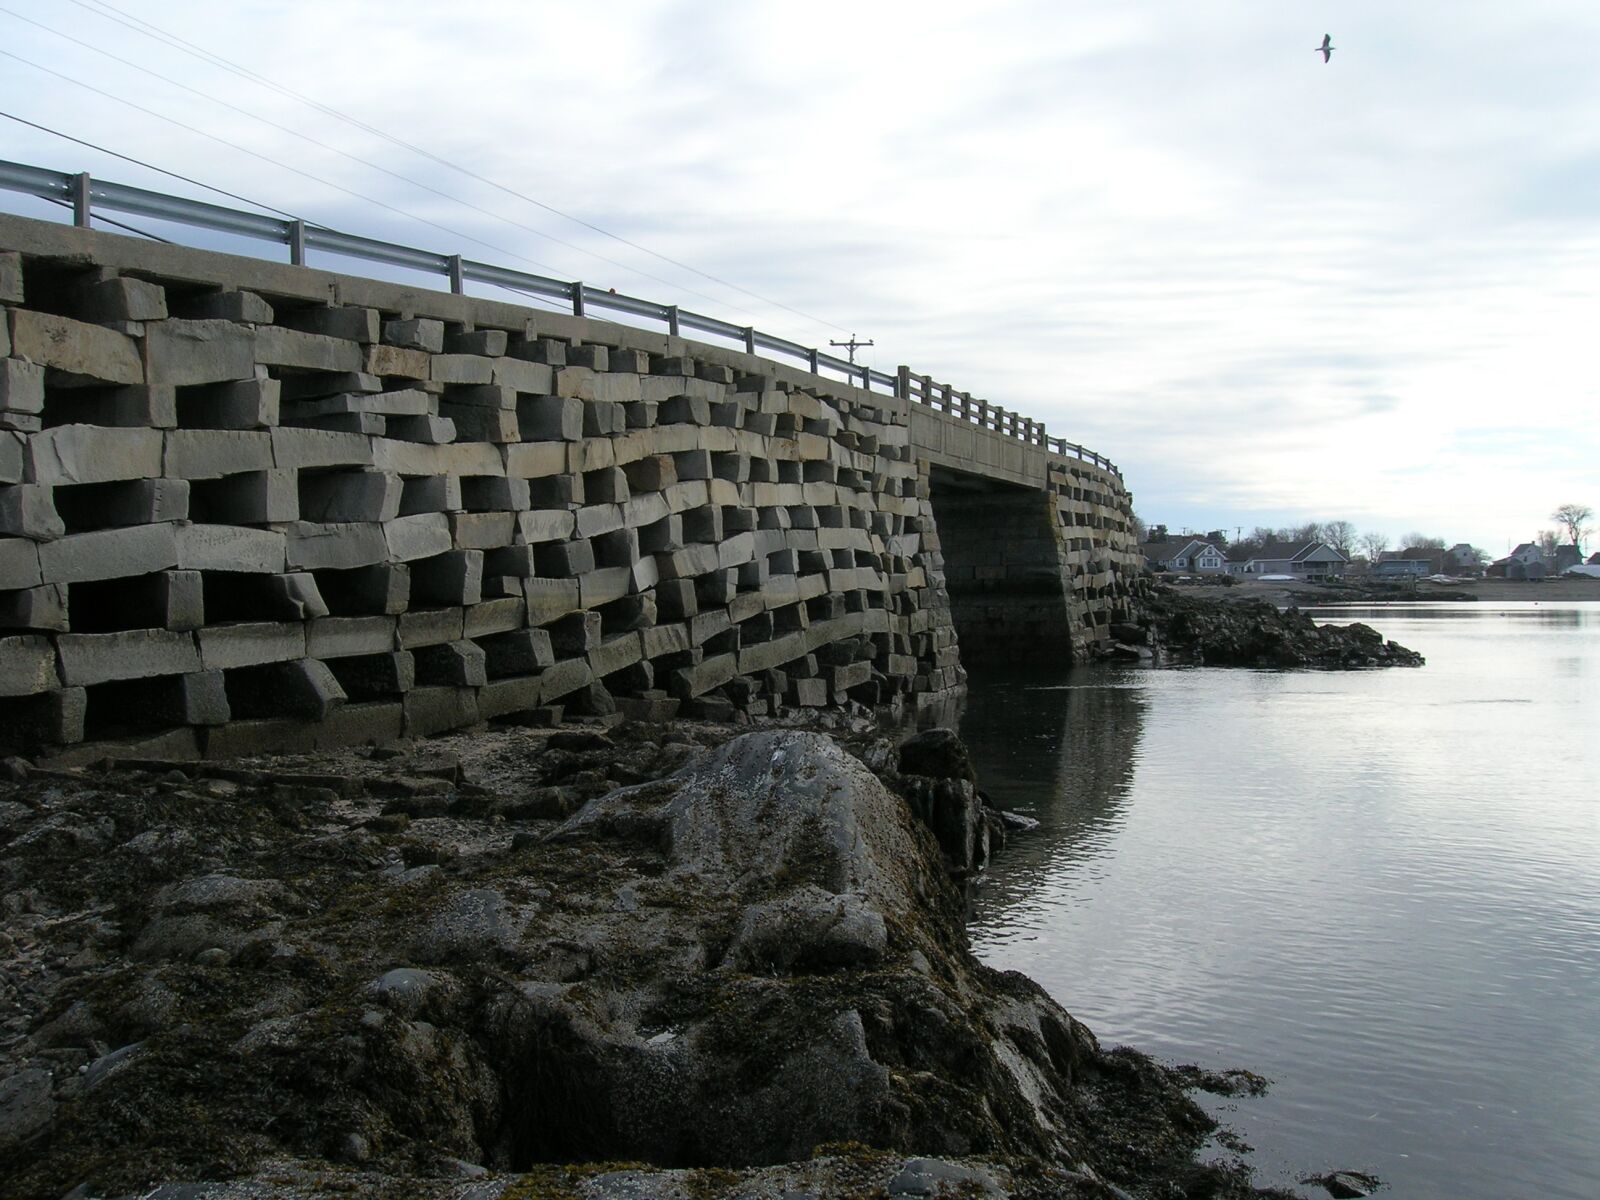 Nikon E5600 sample photo. Cribstone, bridge, ocean photography